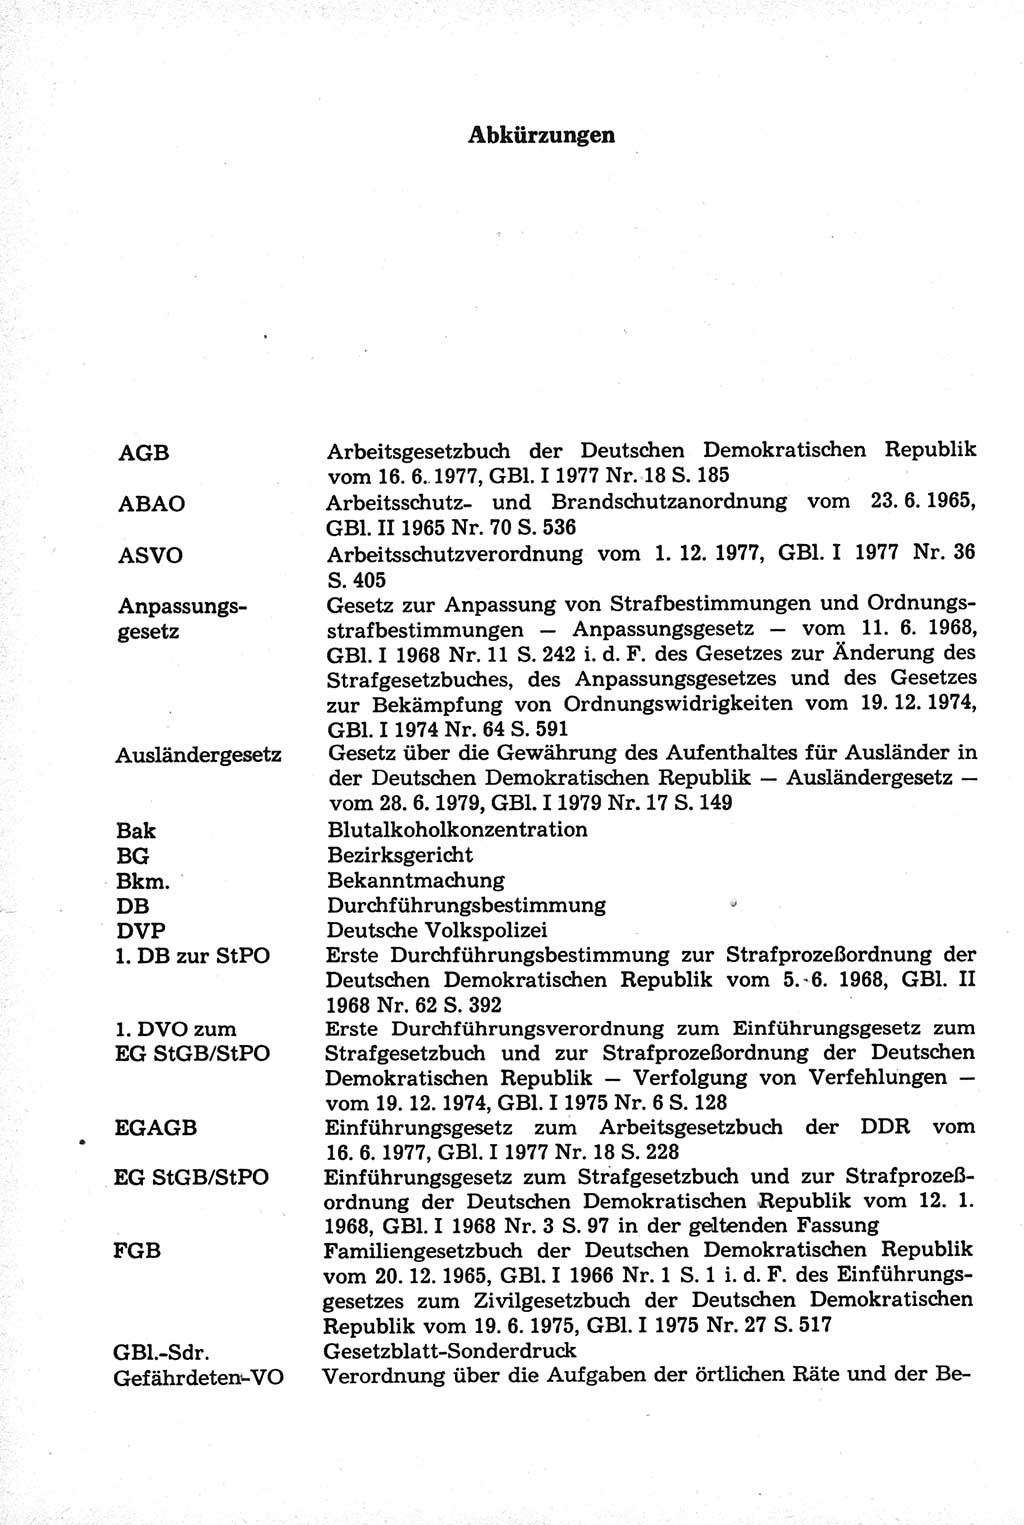 Strafrecht der Deutschen Demokratischen Republik (DDR), Kommentar zum Strafgesetzbuch (StGB) 1981, Seite 8 (Strafr. DDR Komm. StGB 1981, S. 8)